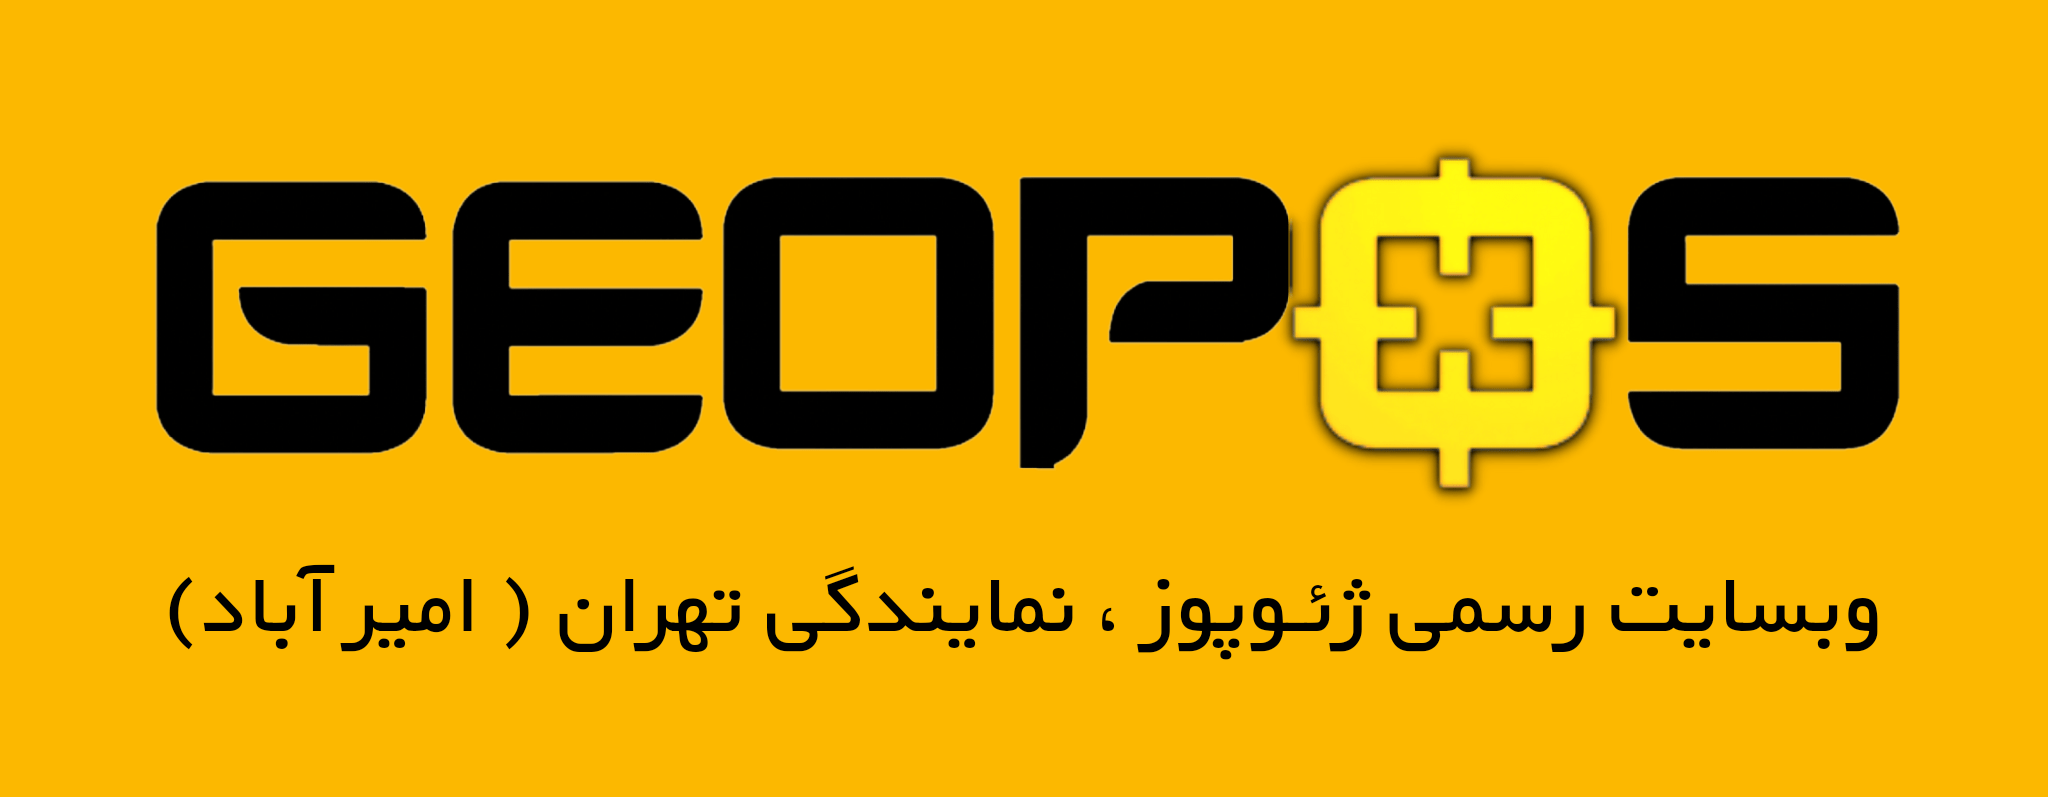 ژئوپوز ، فروش اقساطی تجهیزات نقشه برداری | Geopos Company